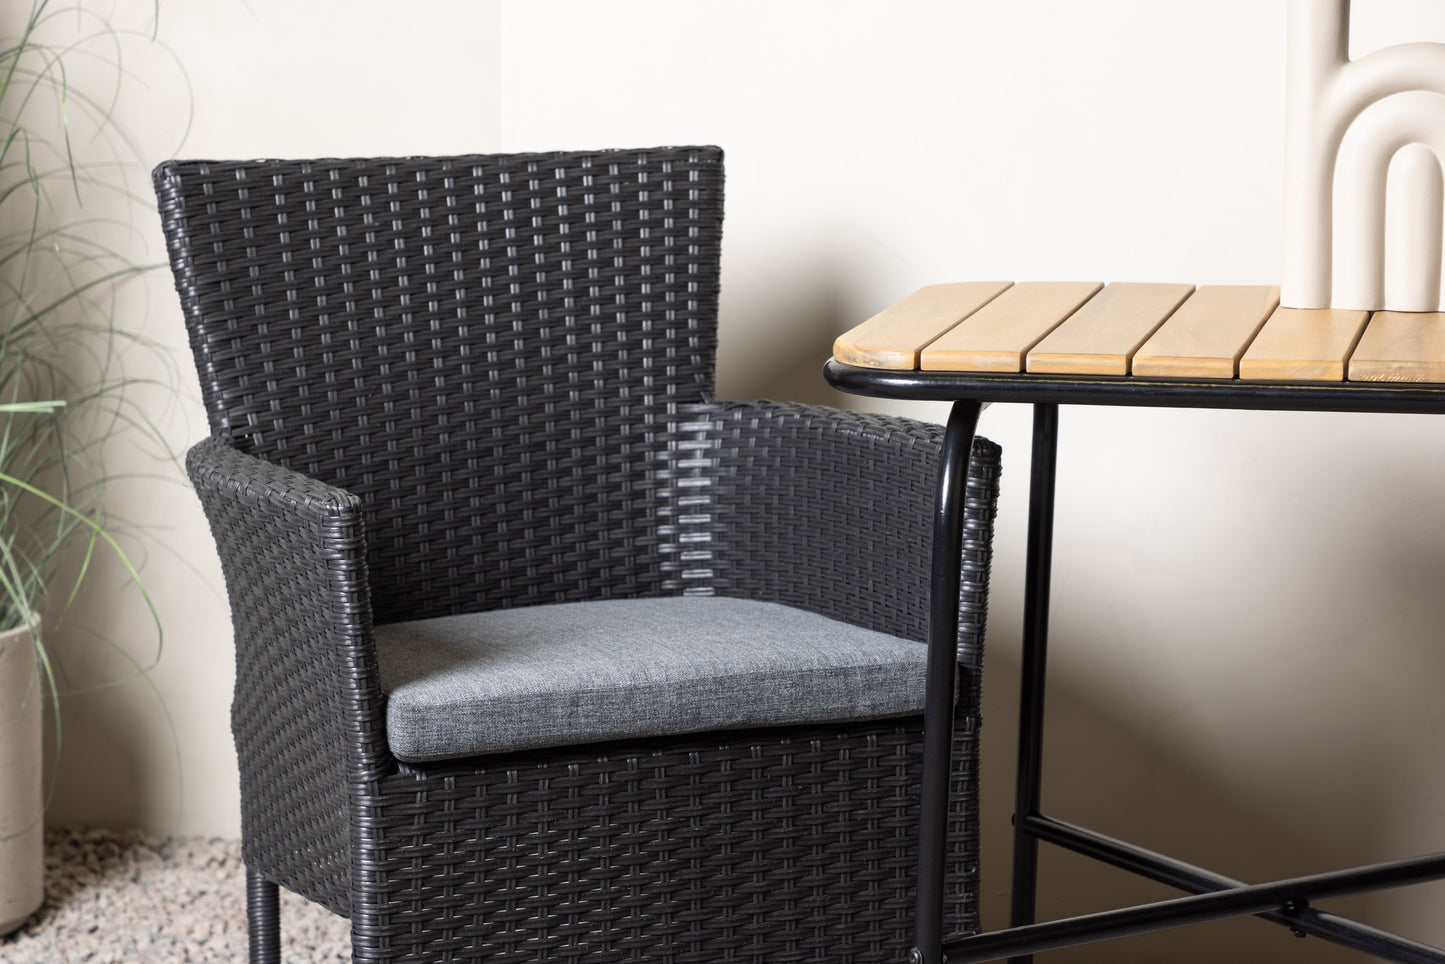 Holmbeck - Cafébord, Stål - Sort / Rektangulær 55*70*74 + Malia stol Aluminium - Sort / flet